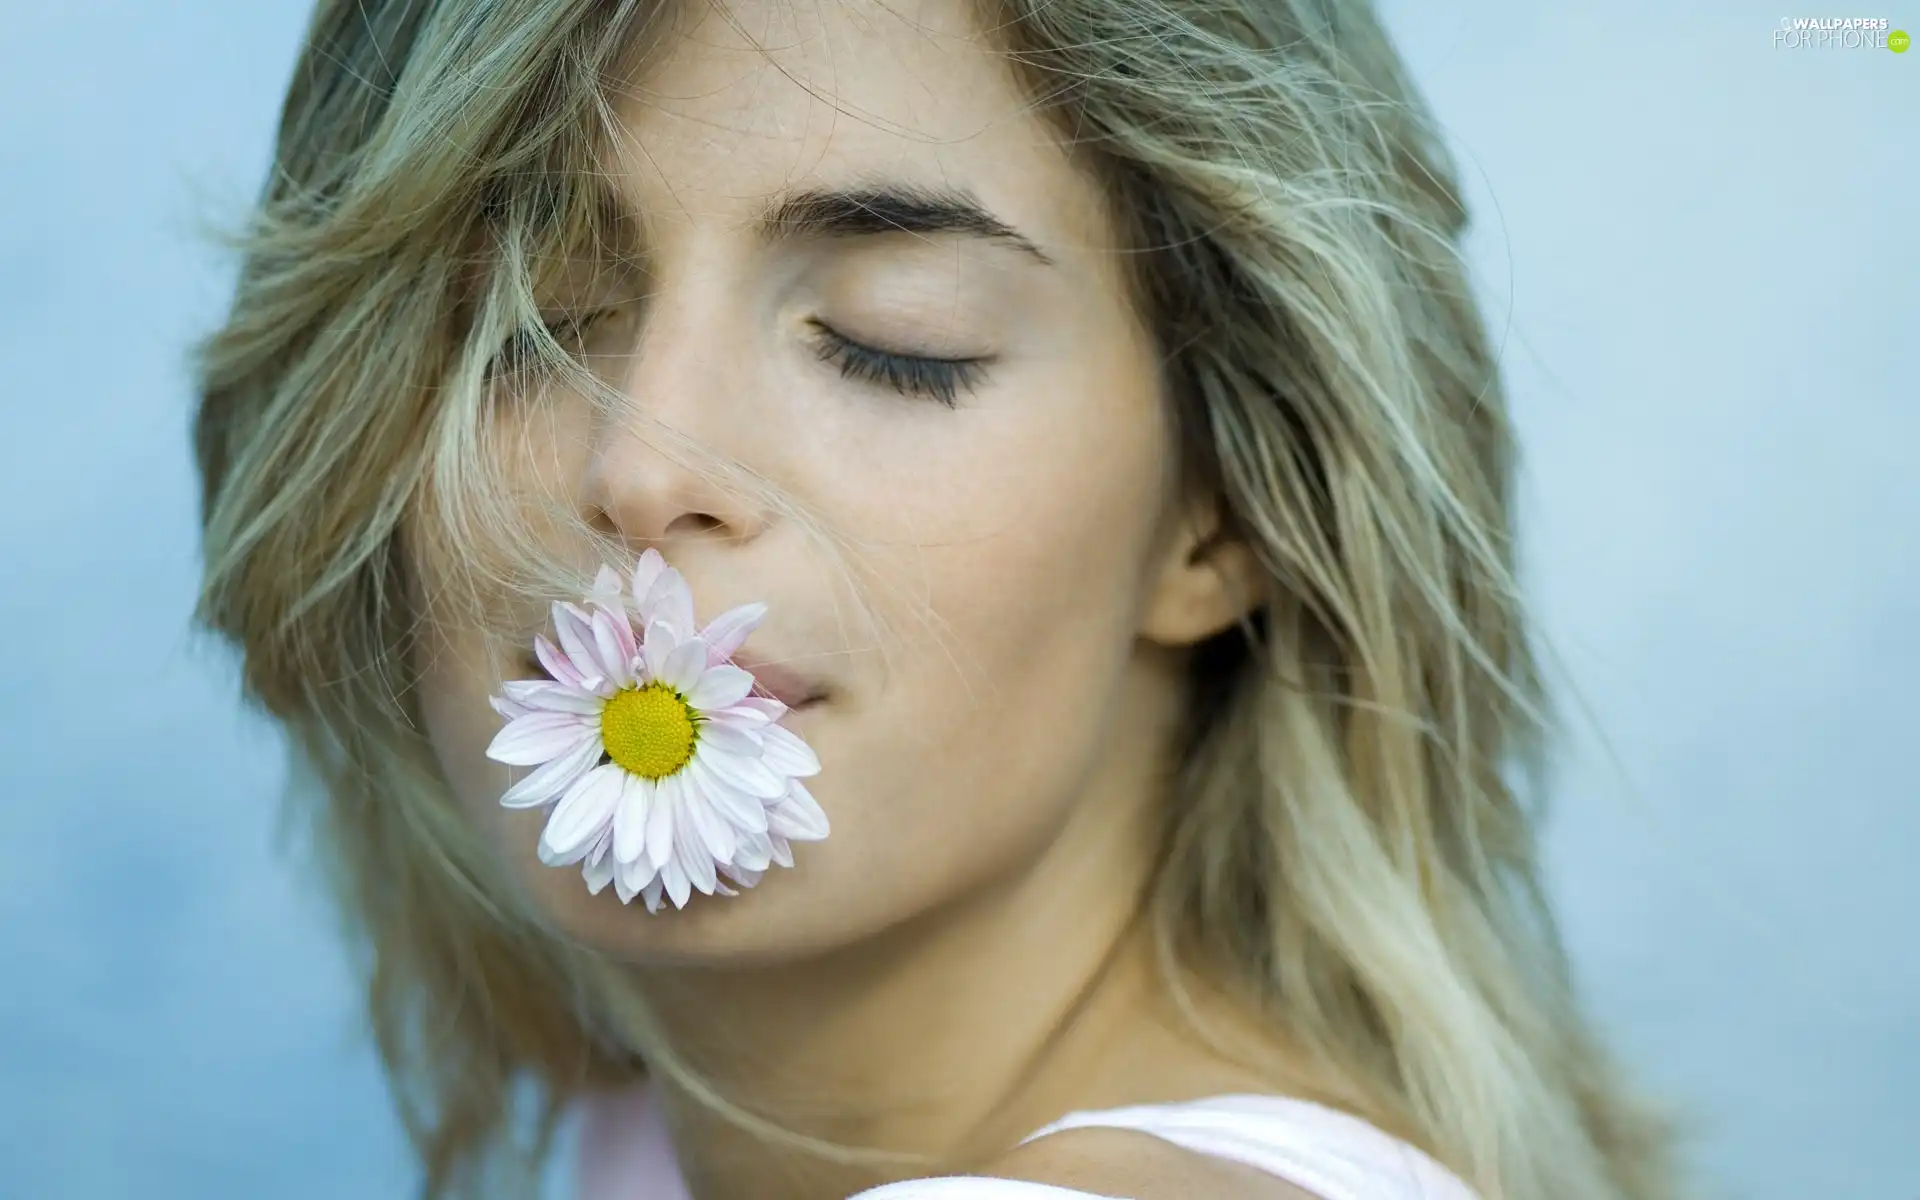 Flower, girl, lips